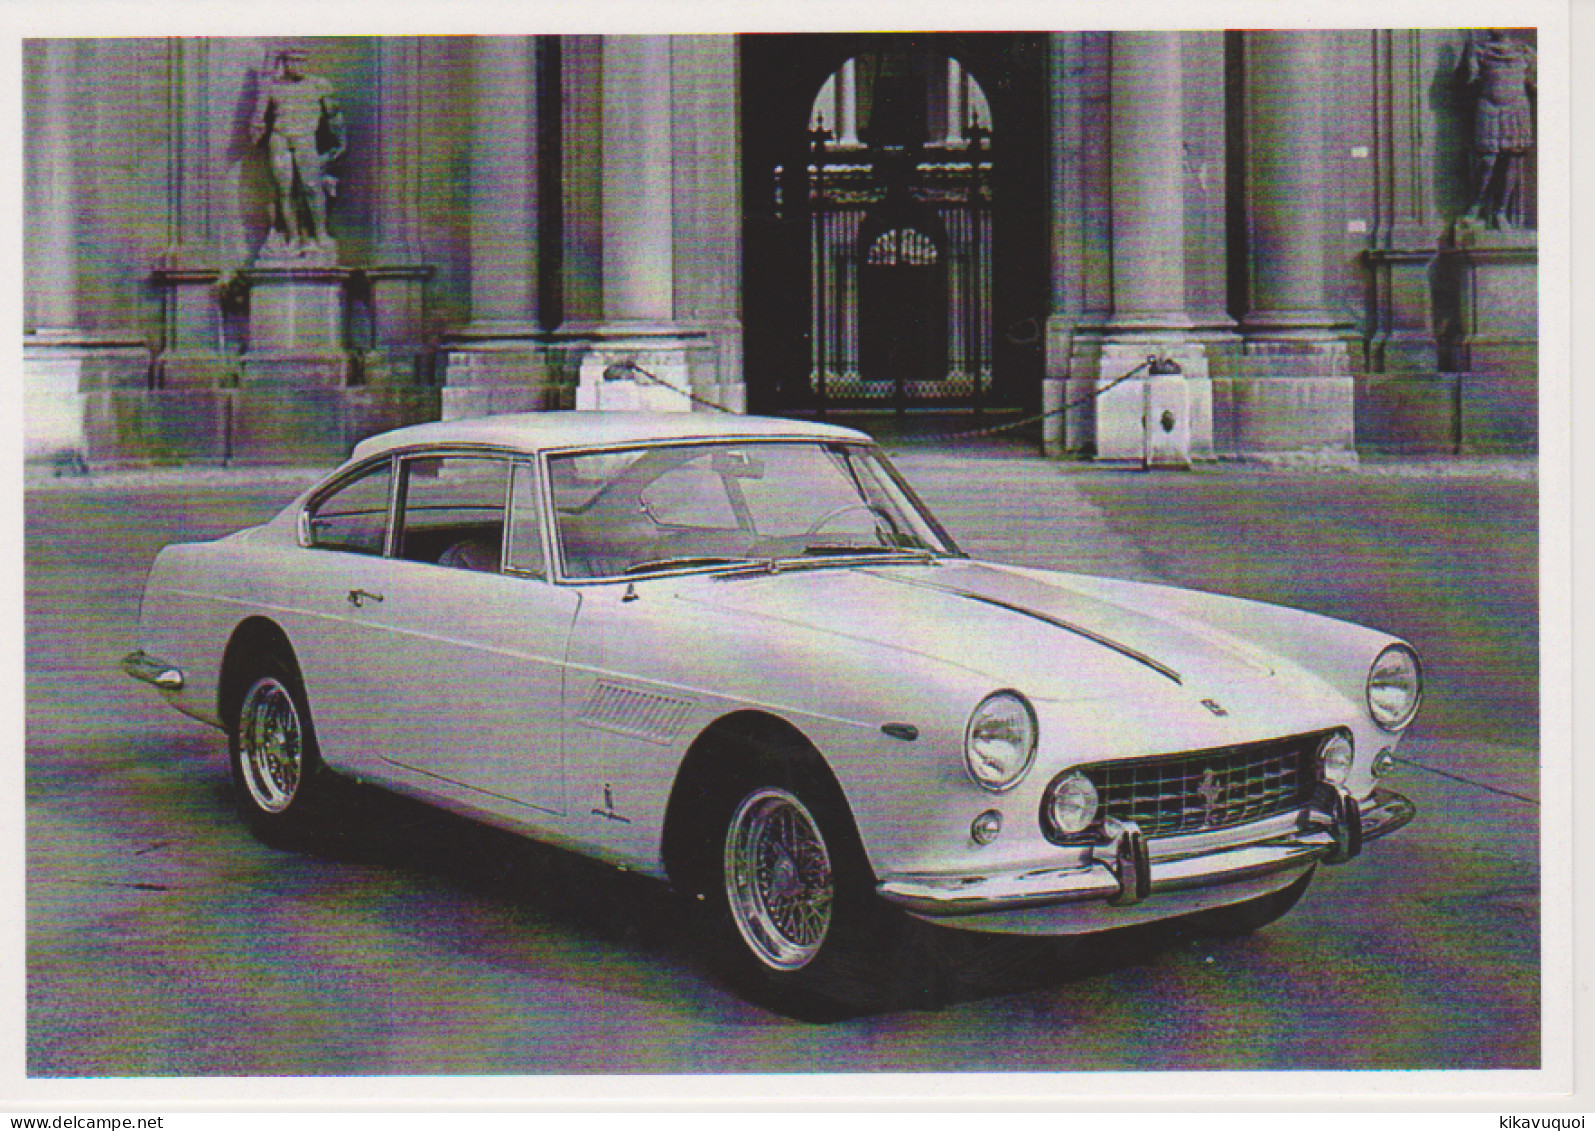 FERRARI 250 GTE De 1960 - Carte Postale 10X15 CM NEUF - Voitures De Tourisme